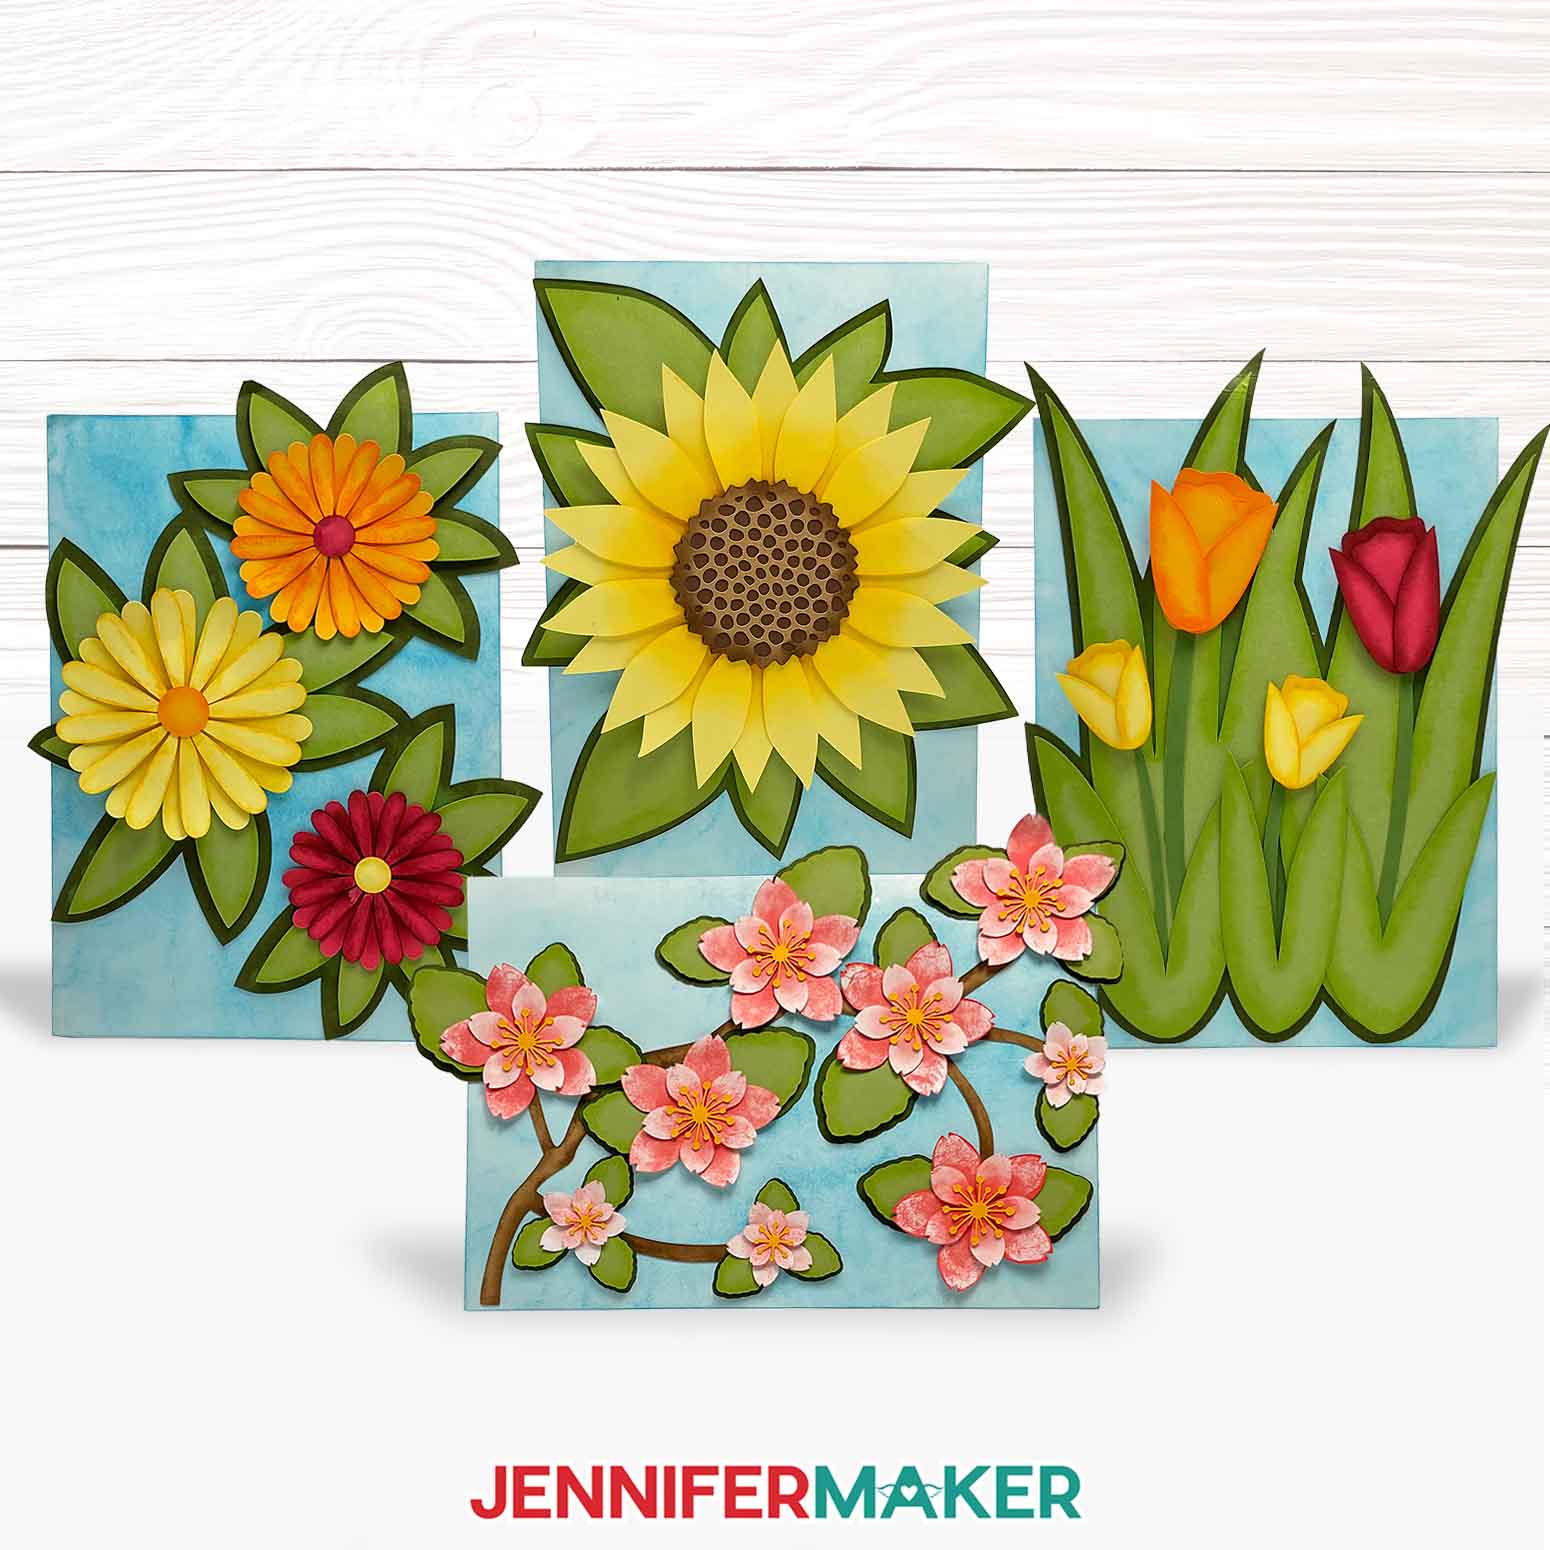 https://jennifermaker.com/wp-content/uploads/ink-cardstock-edges-jennifermaker-s1.jpg